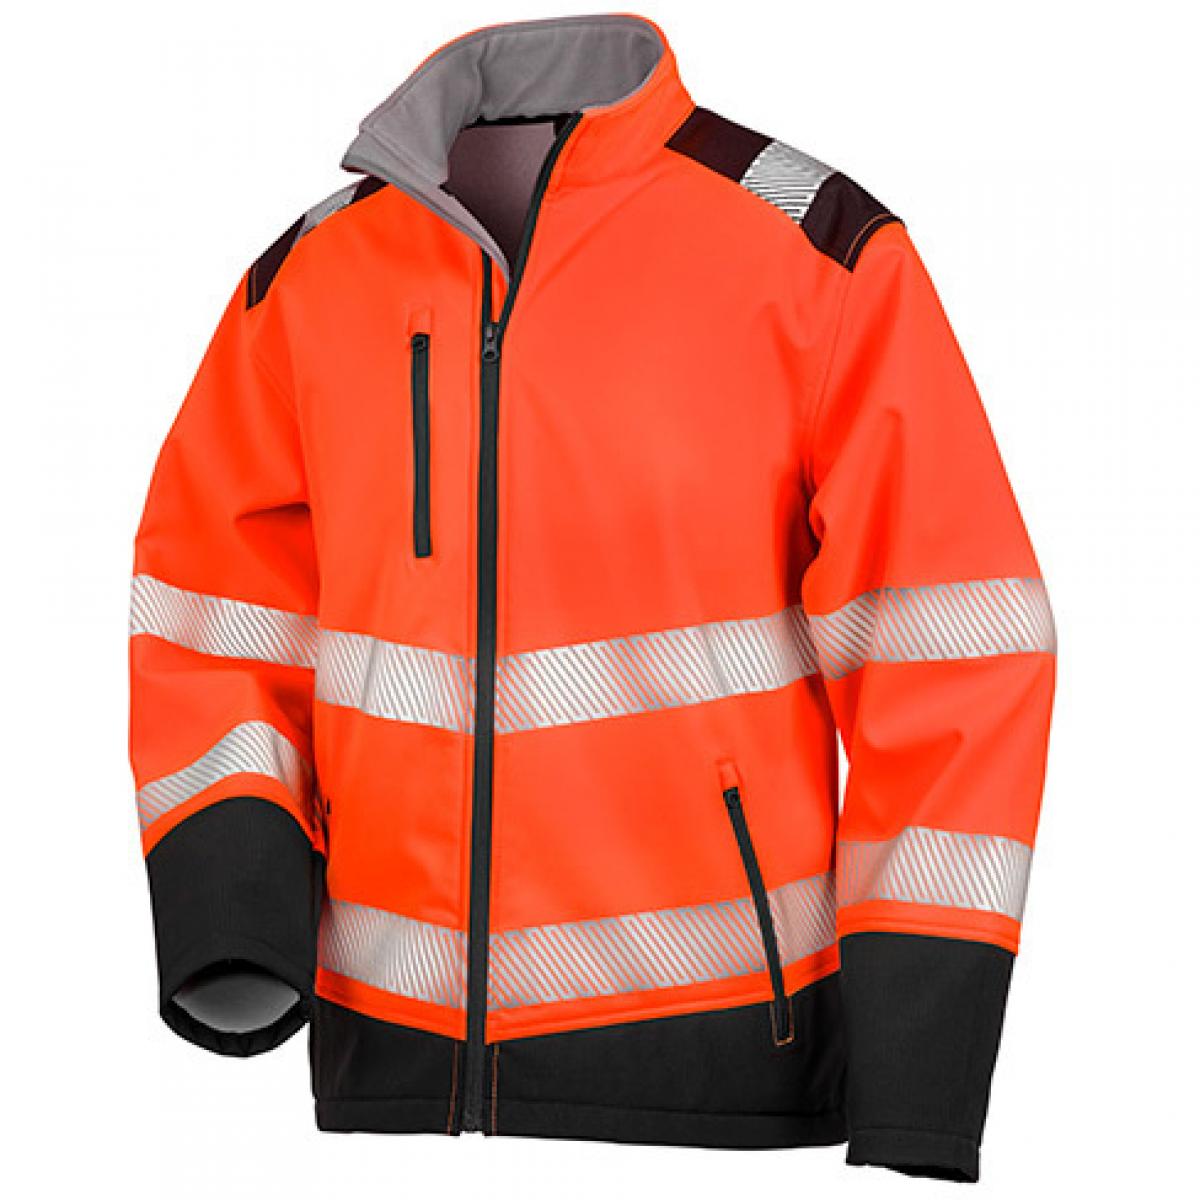 Hersteller: Safe-Guard Herstellernummer: R476X Artikelbezeichnung: Herren Jacke Printable Ripstop Safety Softshell Jacket Farbe: Fluorescent Orange/Black